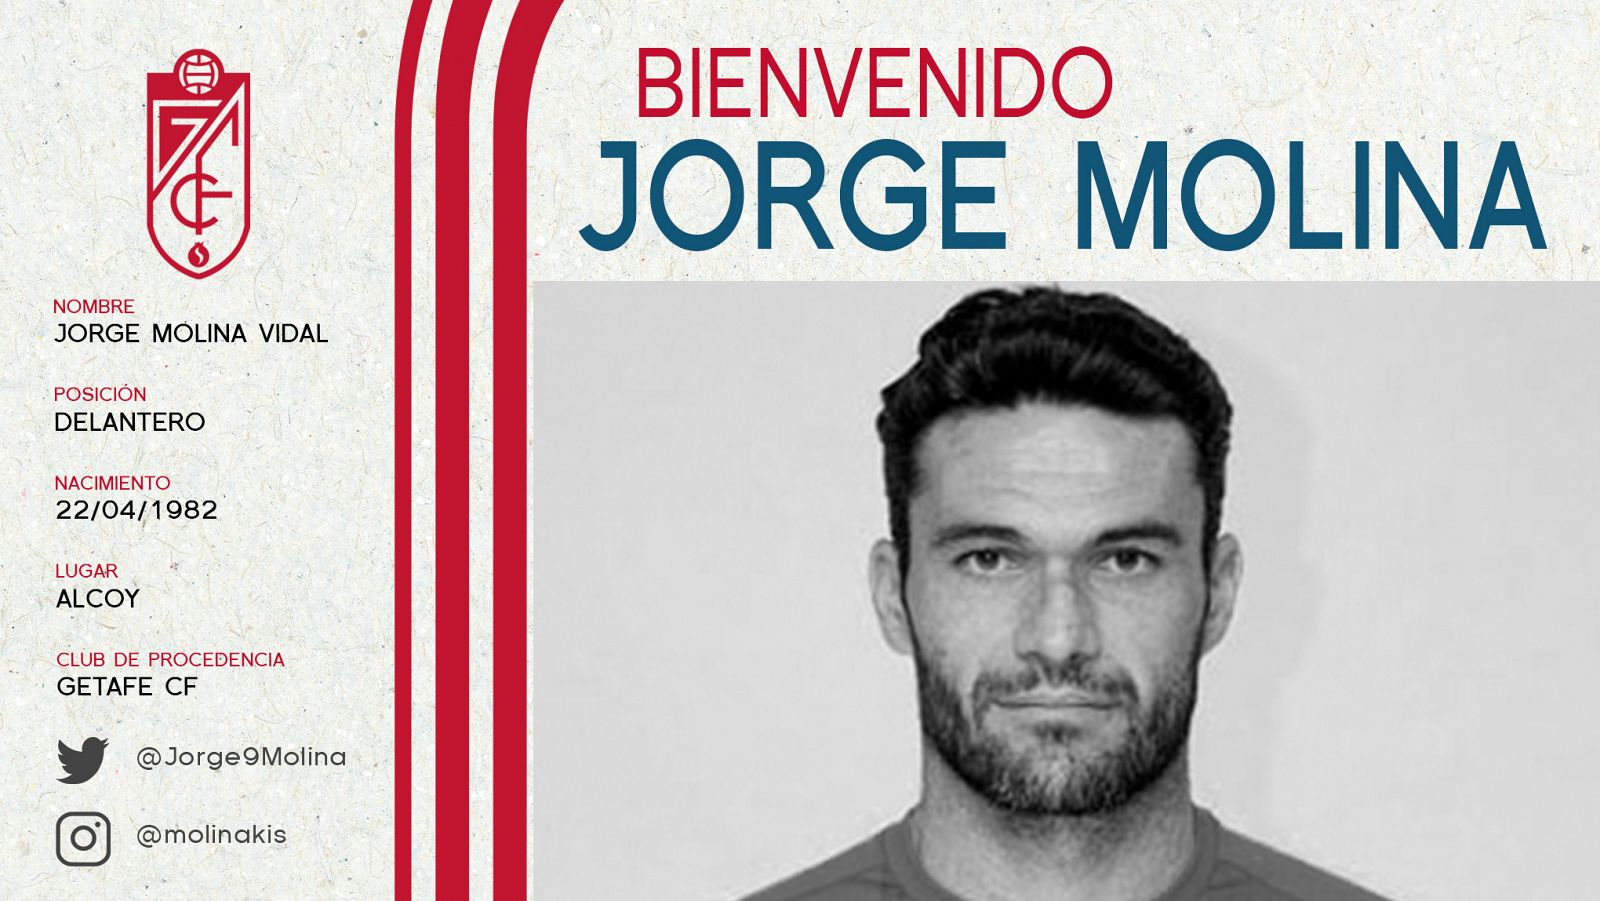 Cartel anunciador del fichaje de Jorge Molina por el Granada en redes sociales.